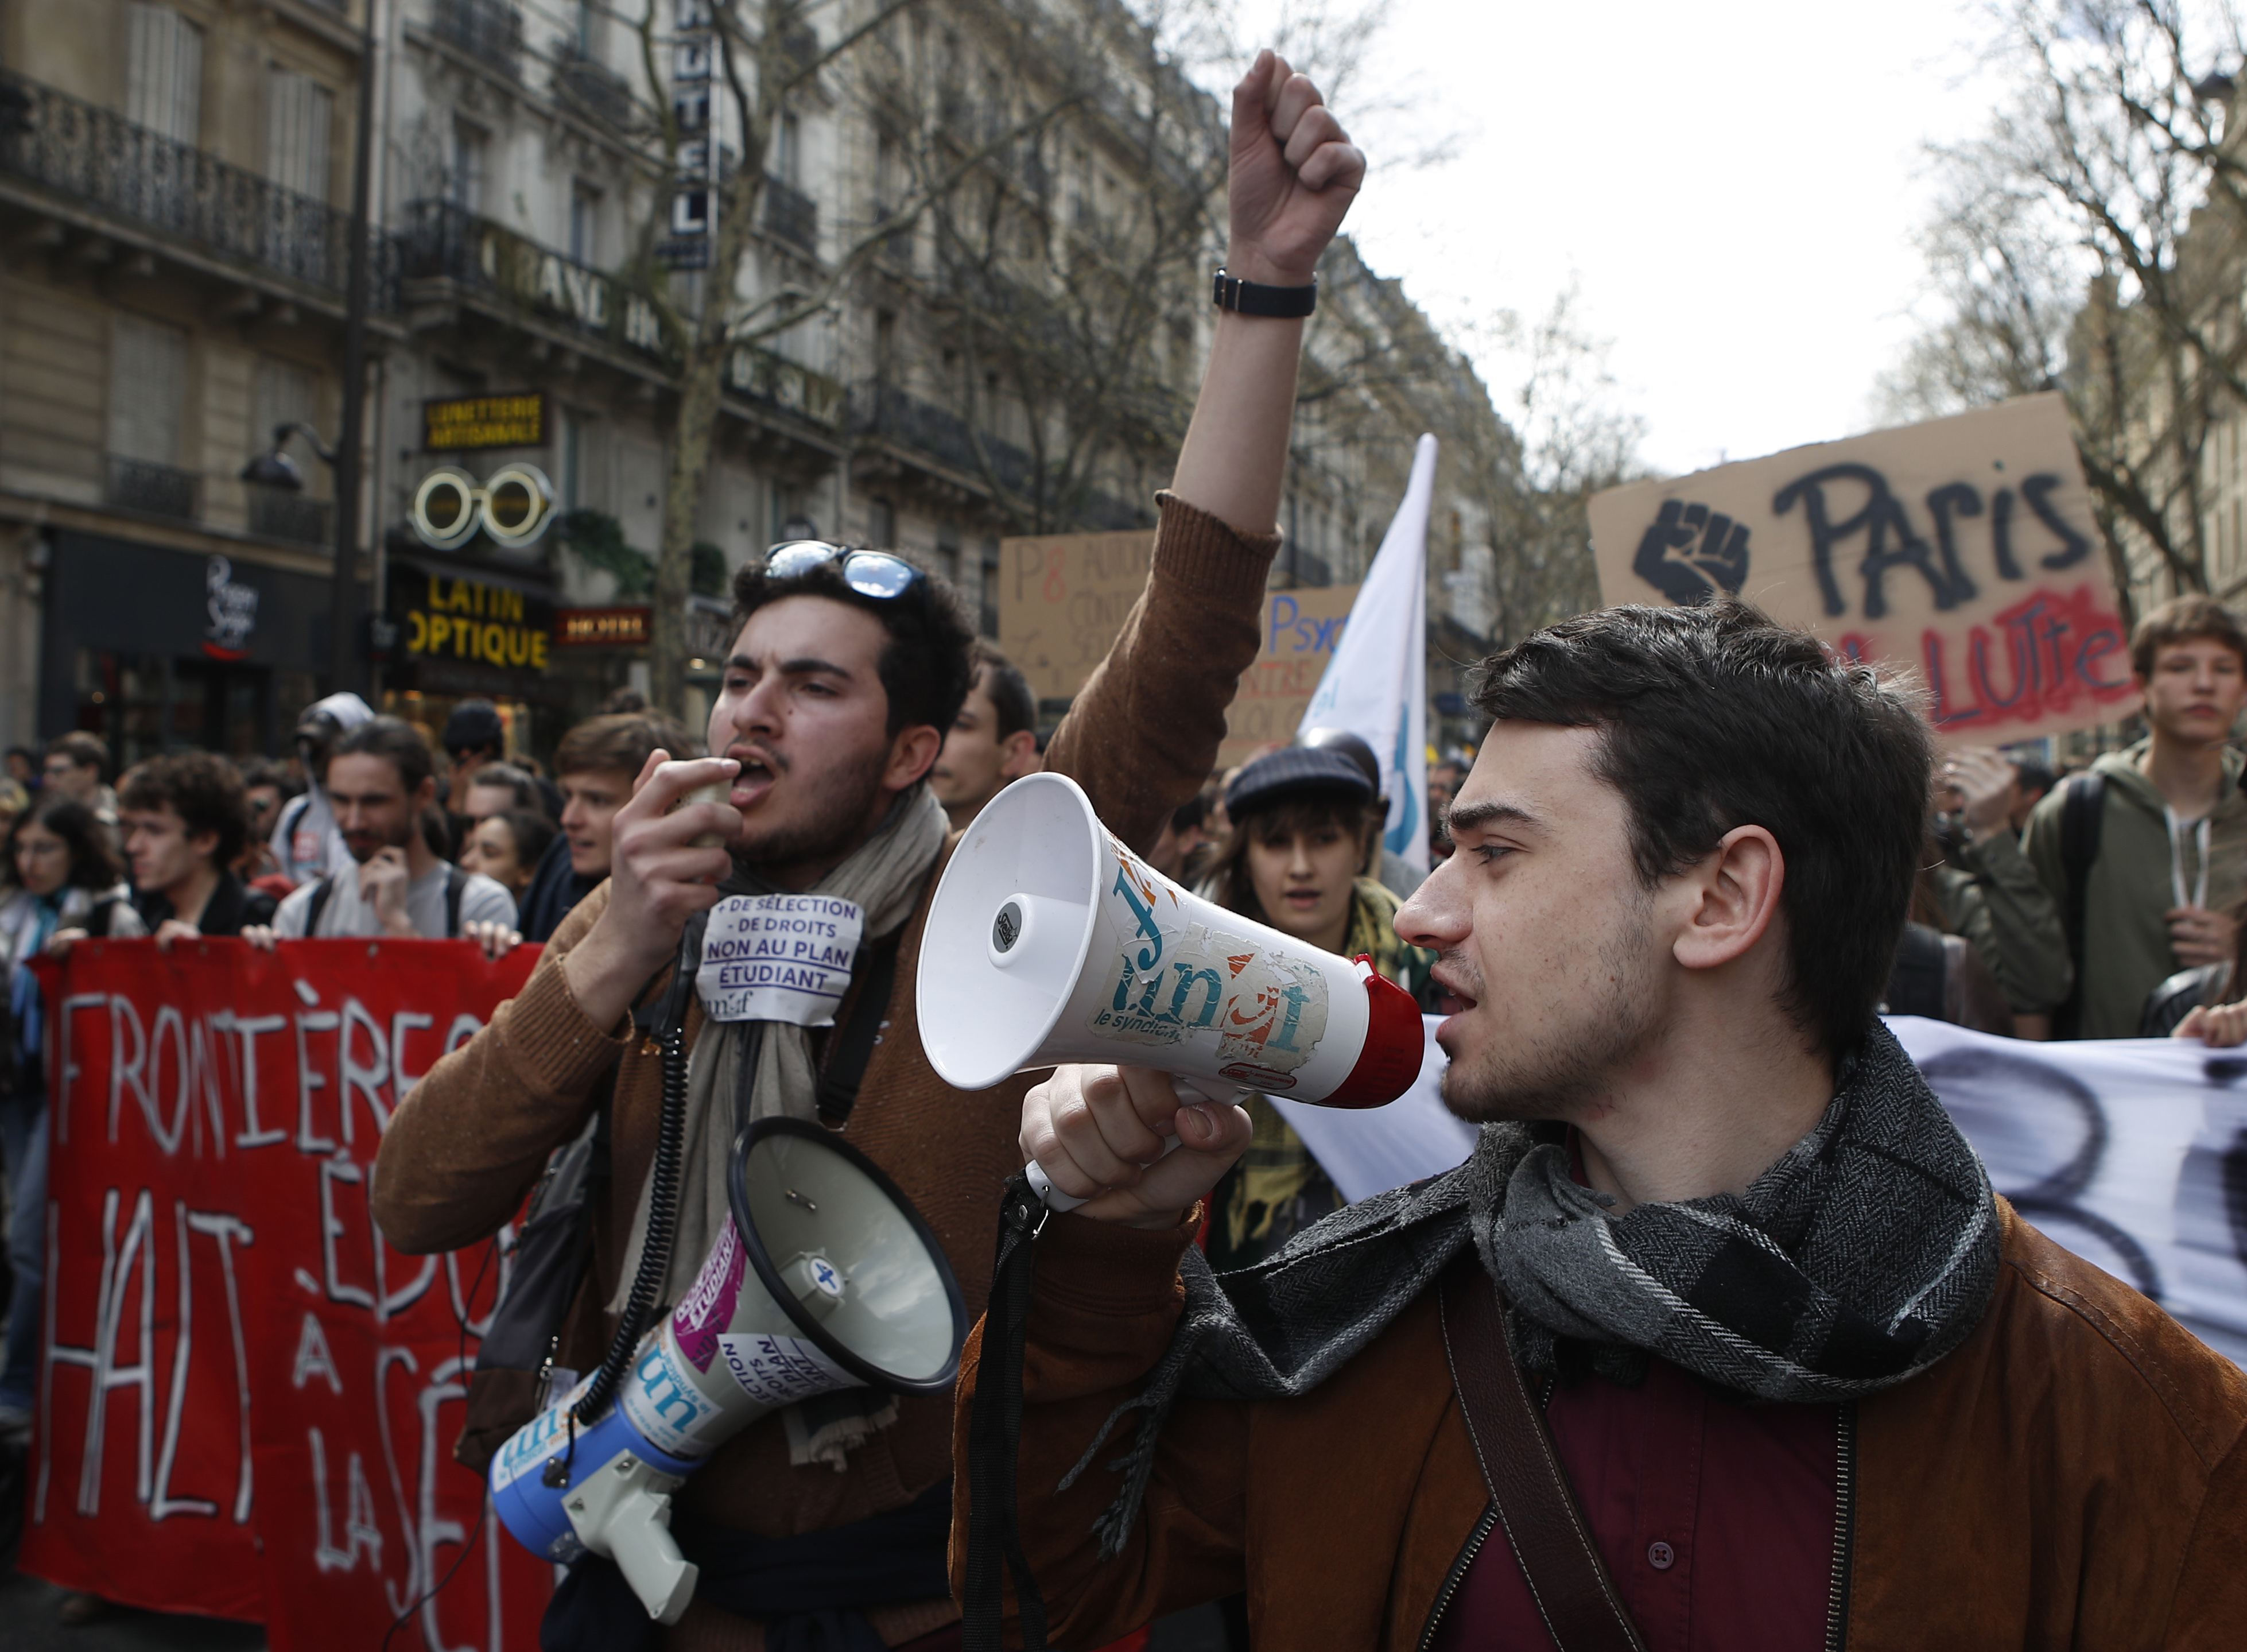 Students demonstrate in Paris (Francois Mori/AP)